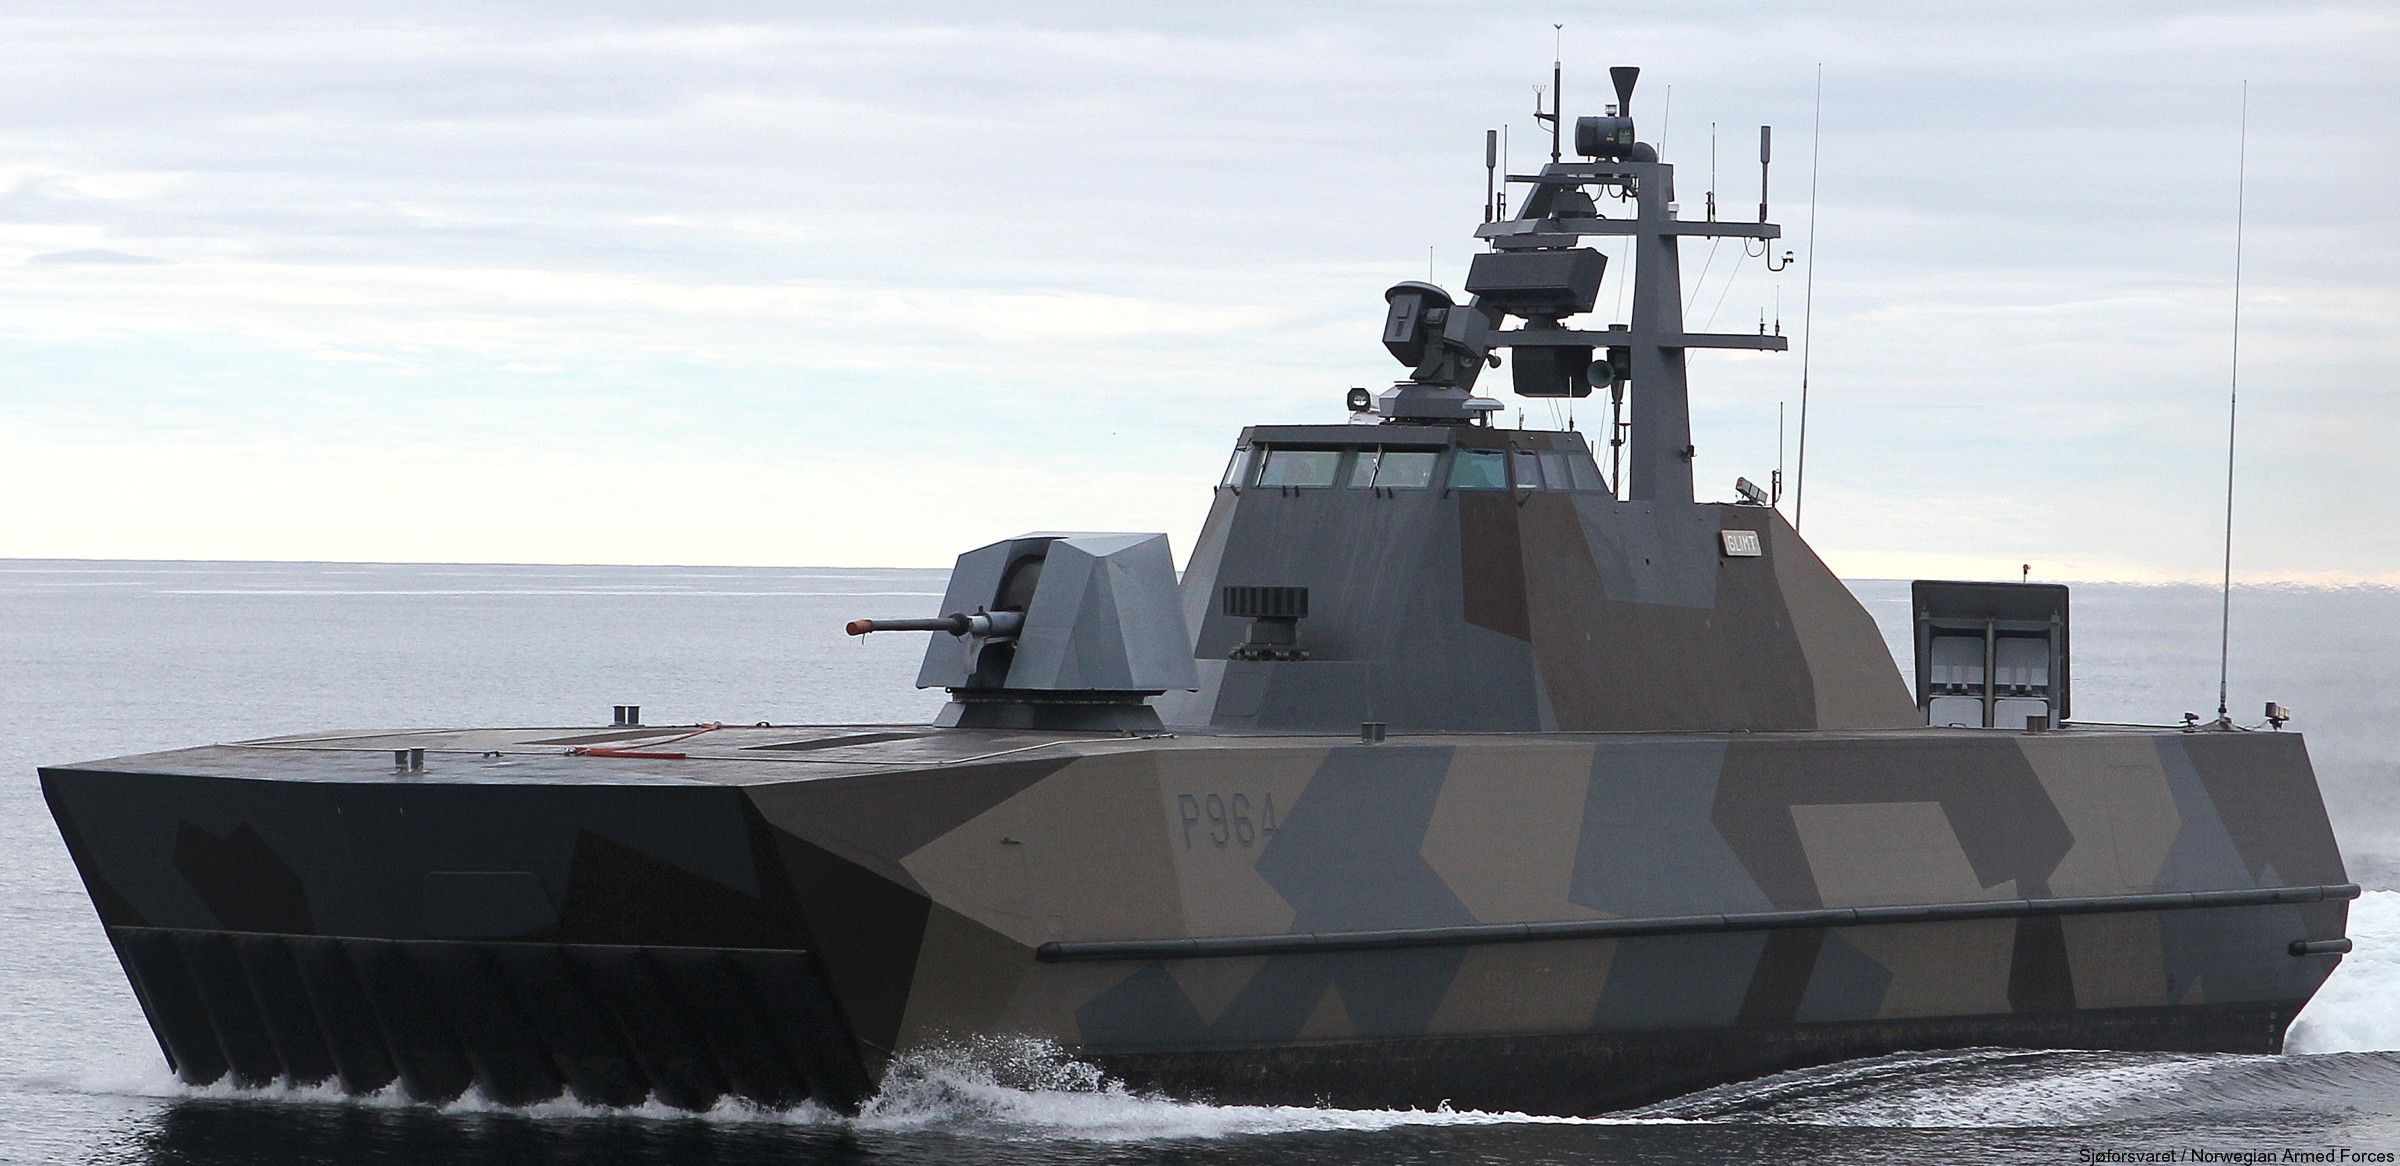 p-964 glimt knm hnoms skjold class corvette royal norwegian navy sjoforsvaret 11